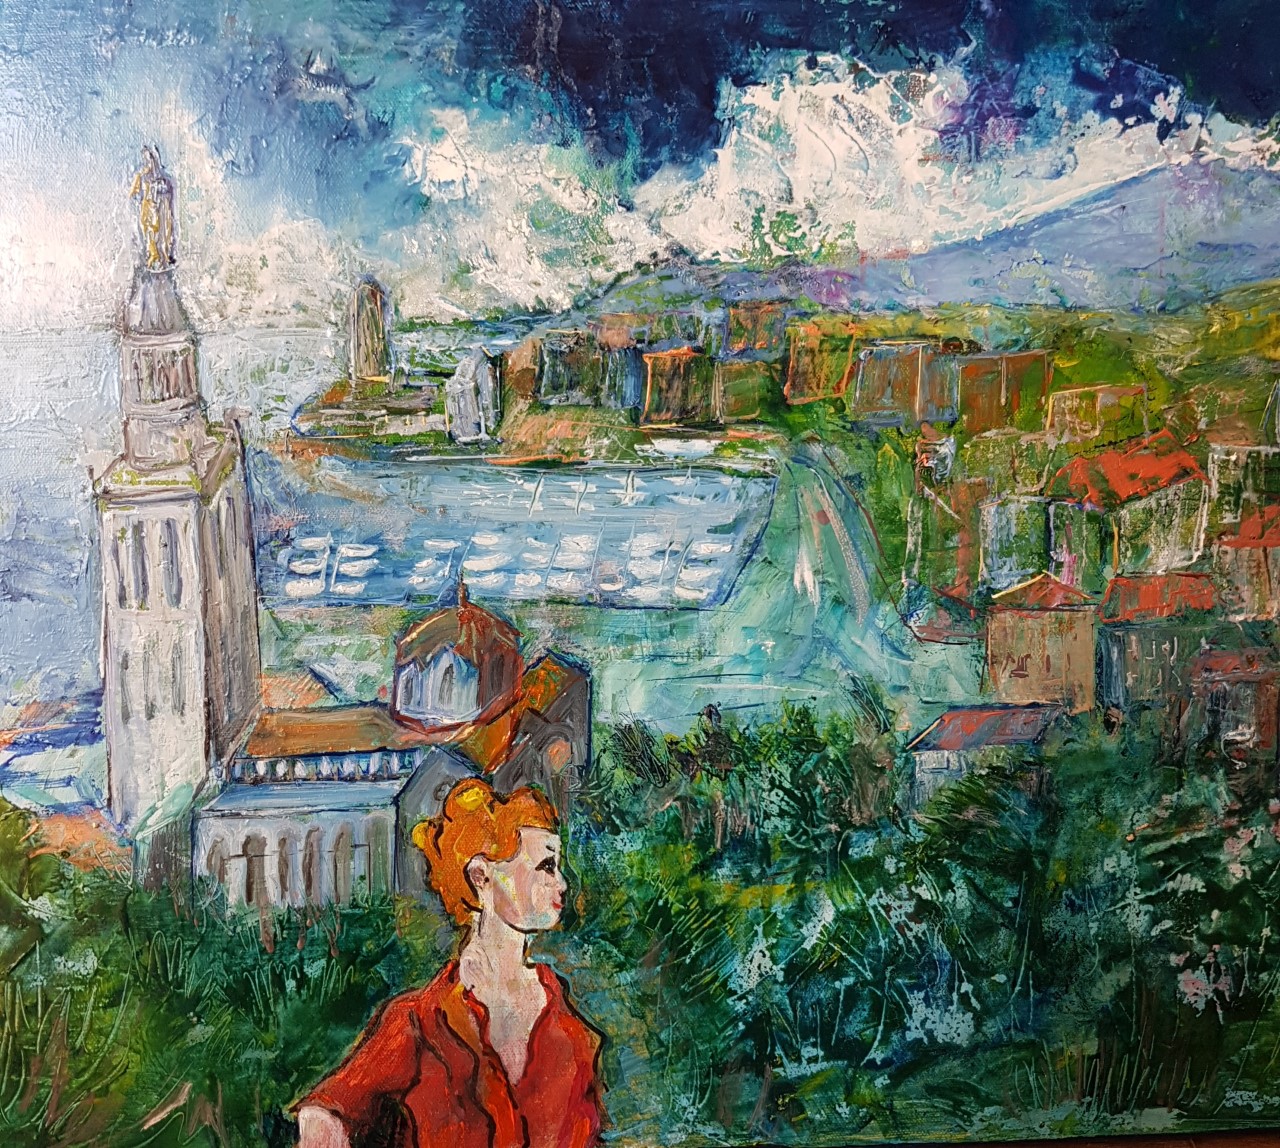 Peinture de l'artiste peintre Adèle liva, le titre de l'oeuvre est : Forêt d'oliviers